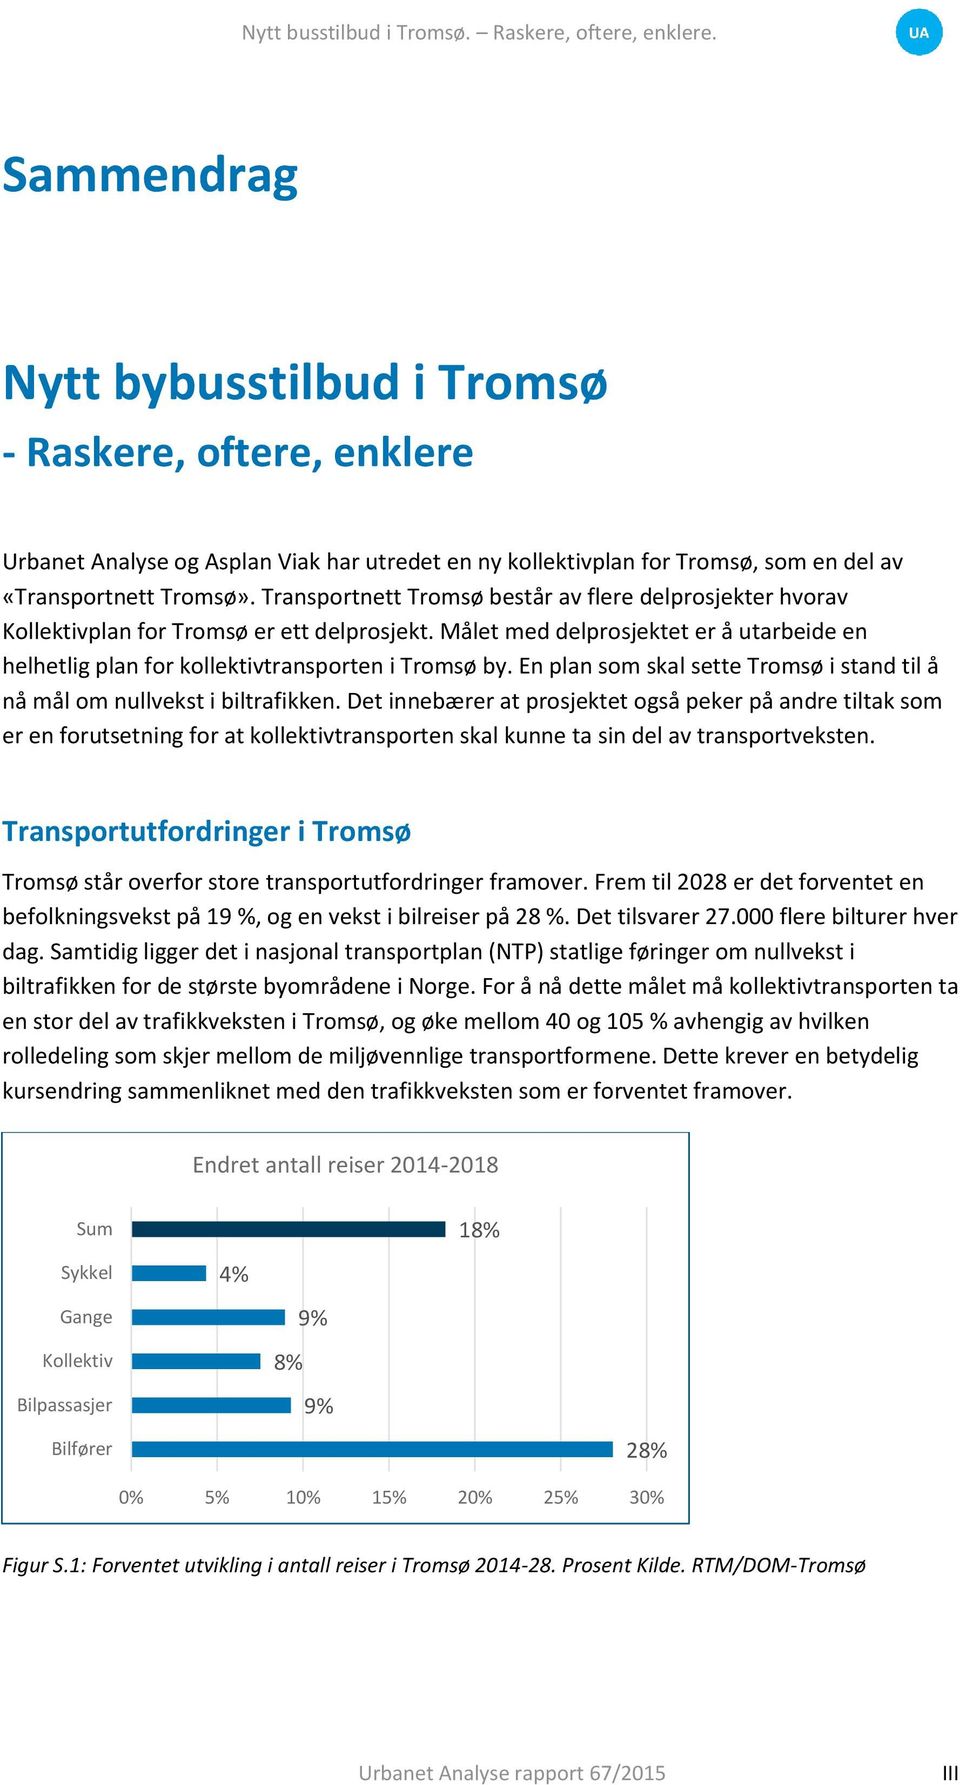 Transportnett Tromsø består av flere delprosjekter hvorav Kollektivplan for Tromsø er ett delprosjekt. Målet med delprosjektet er å utarbeide en helhetlig plan for kollektivtransporten i Tromsø by.